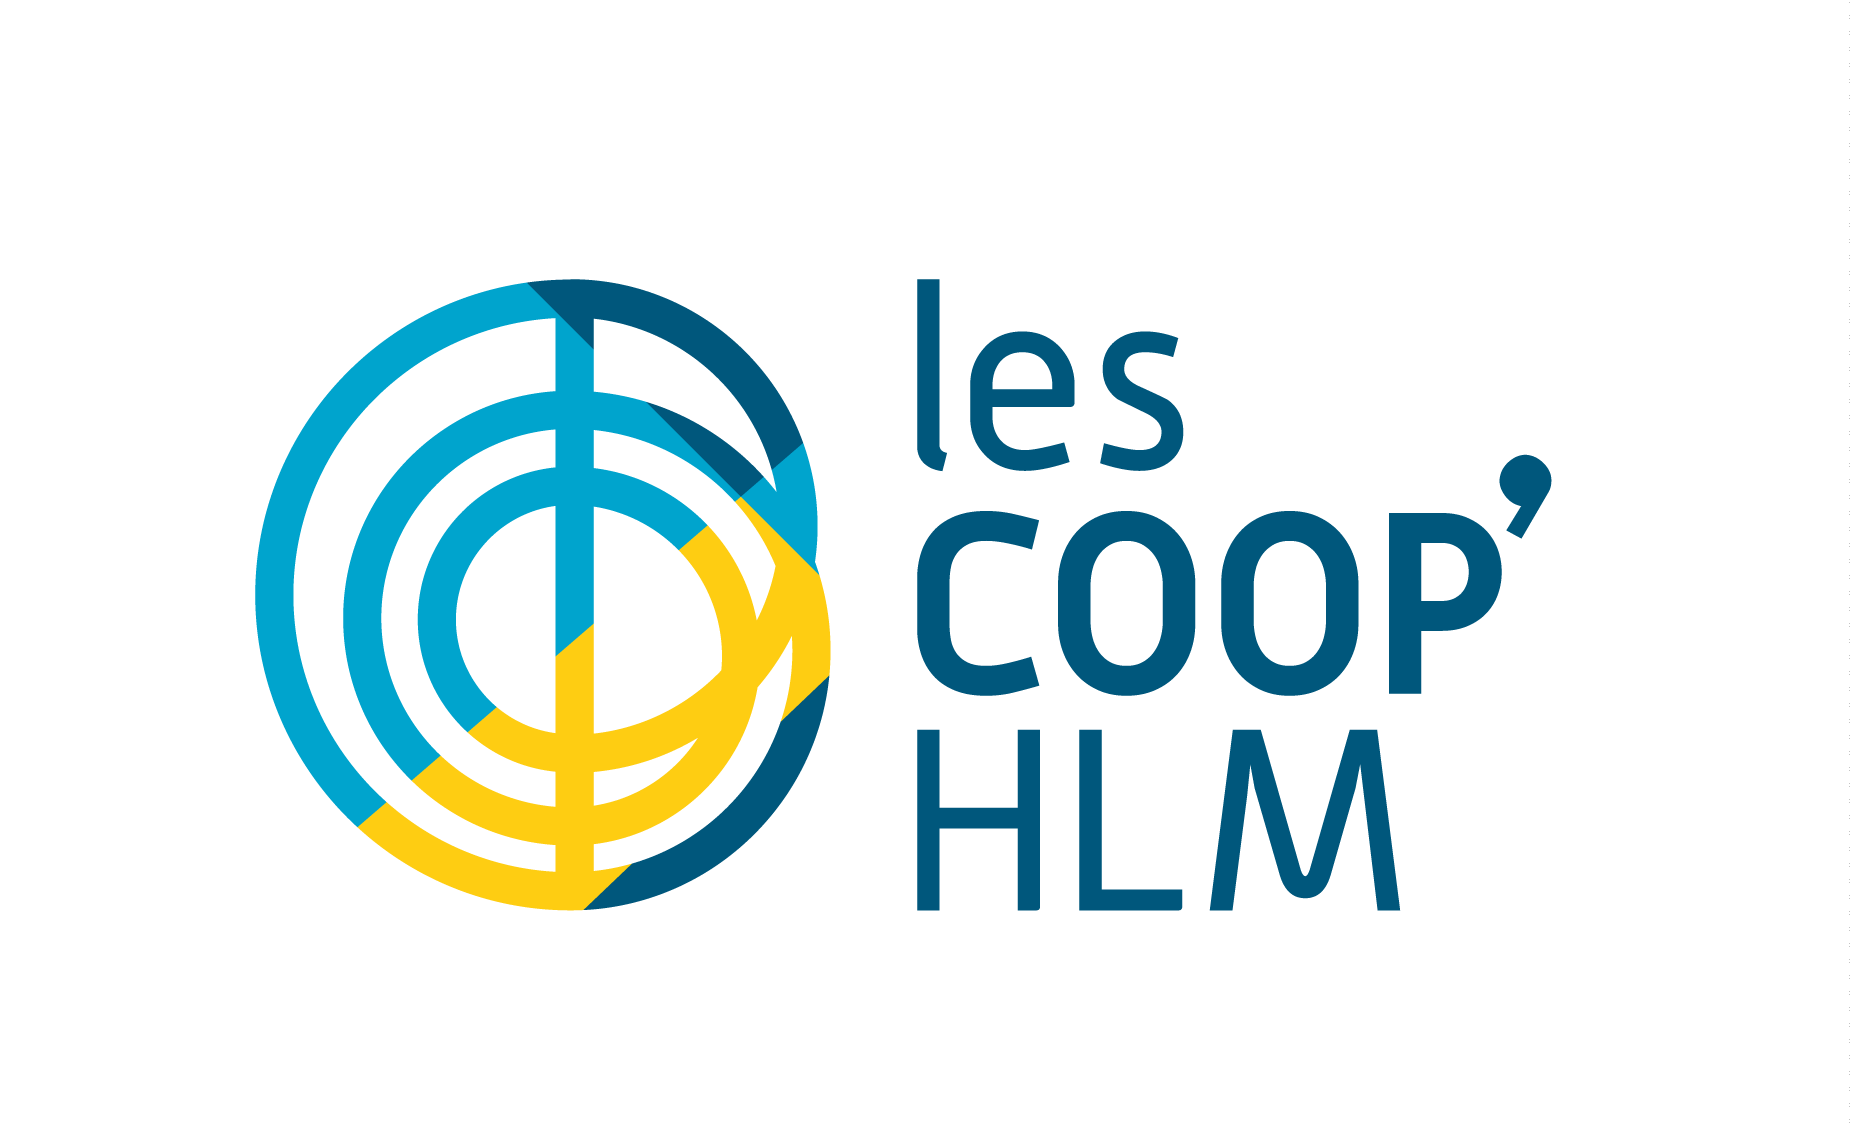 logo Coop HLM
Lien vers: https://www.hlm.coop/